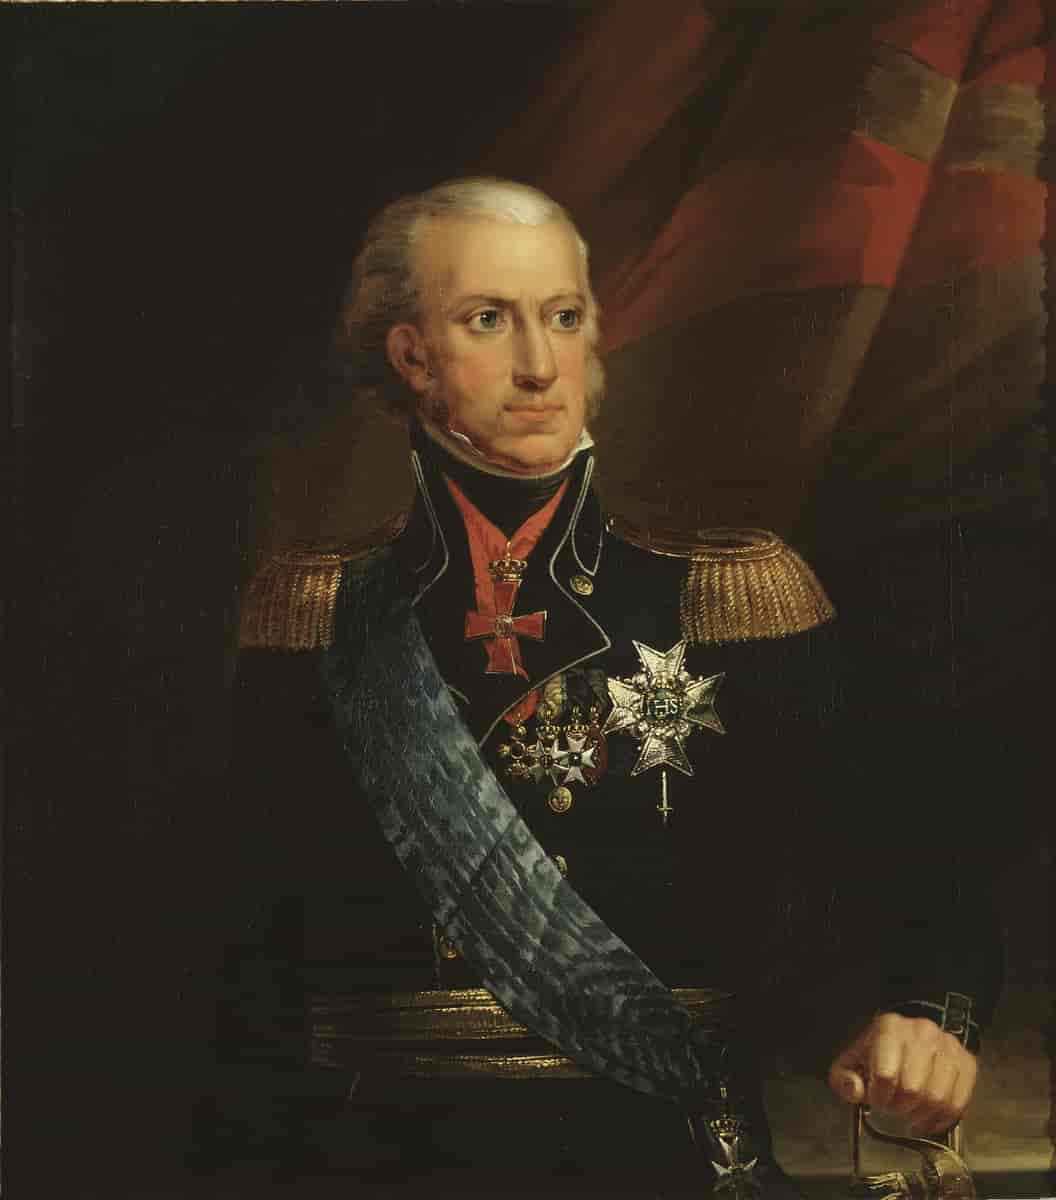 Karl XIII, 1748-1818